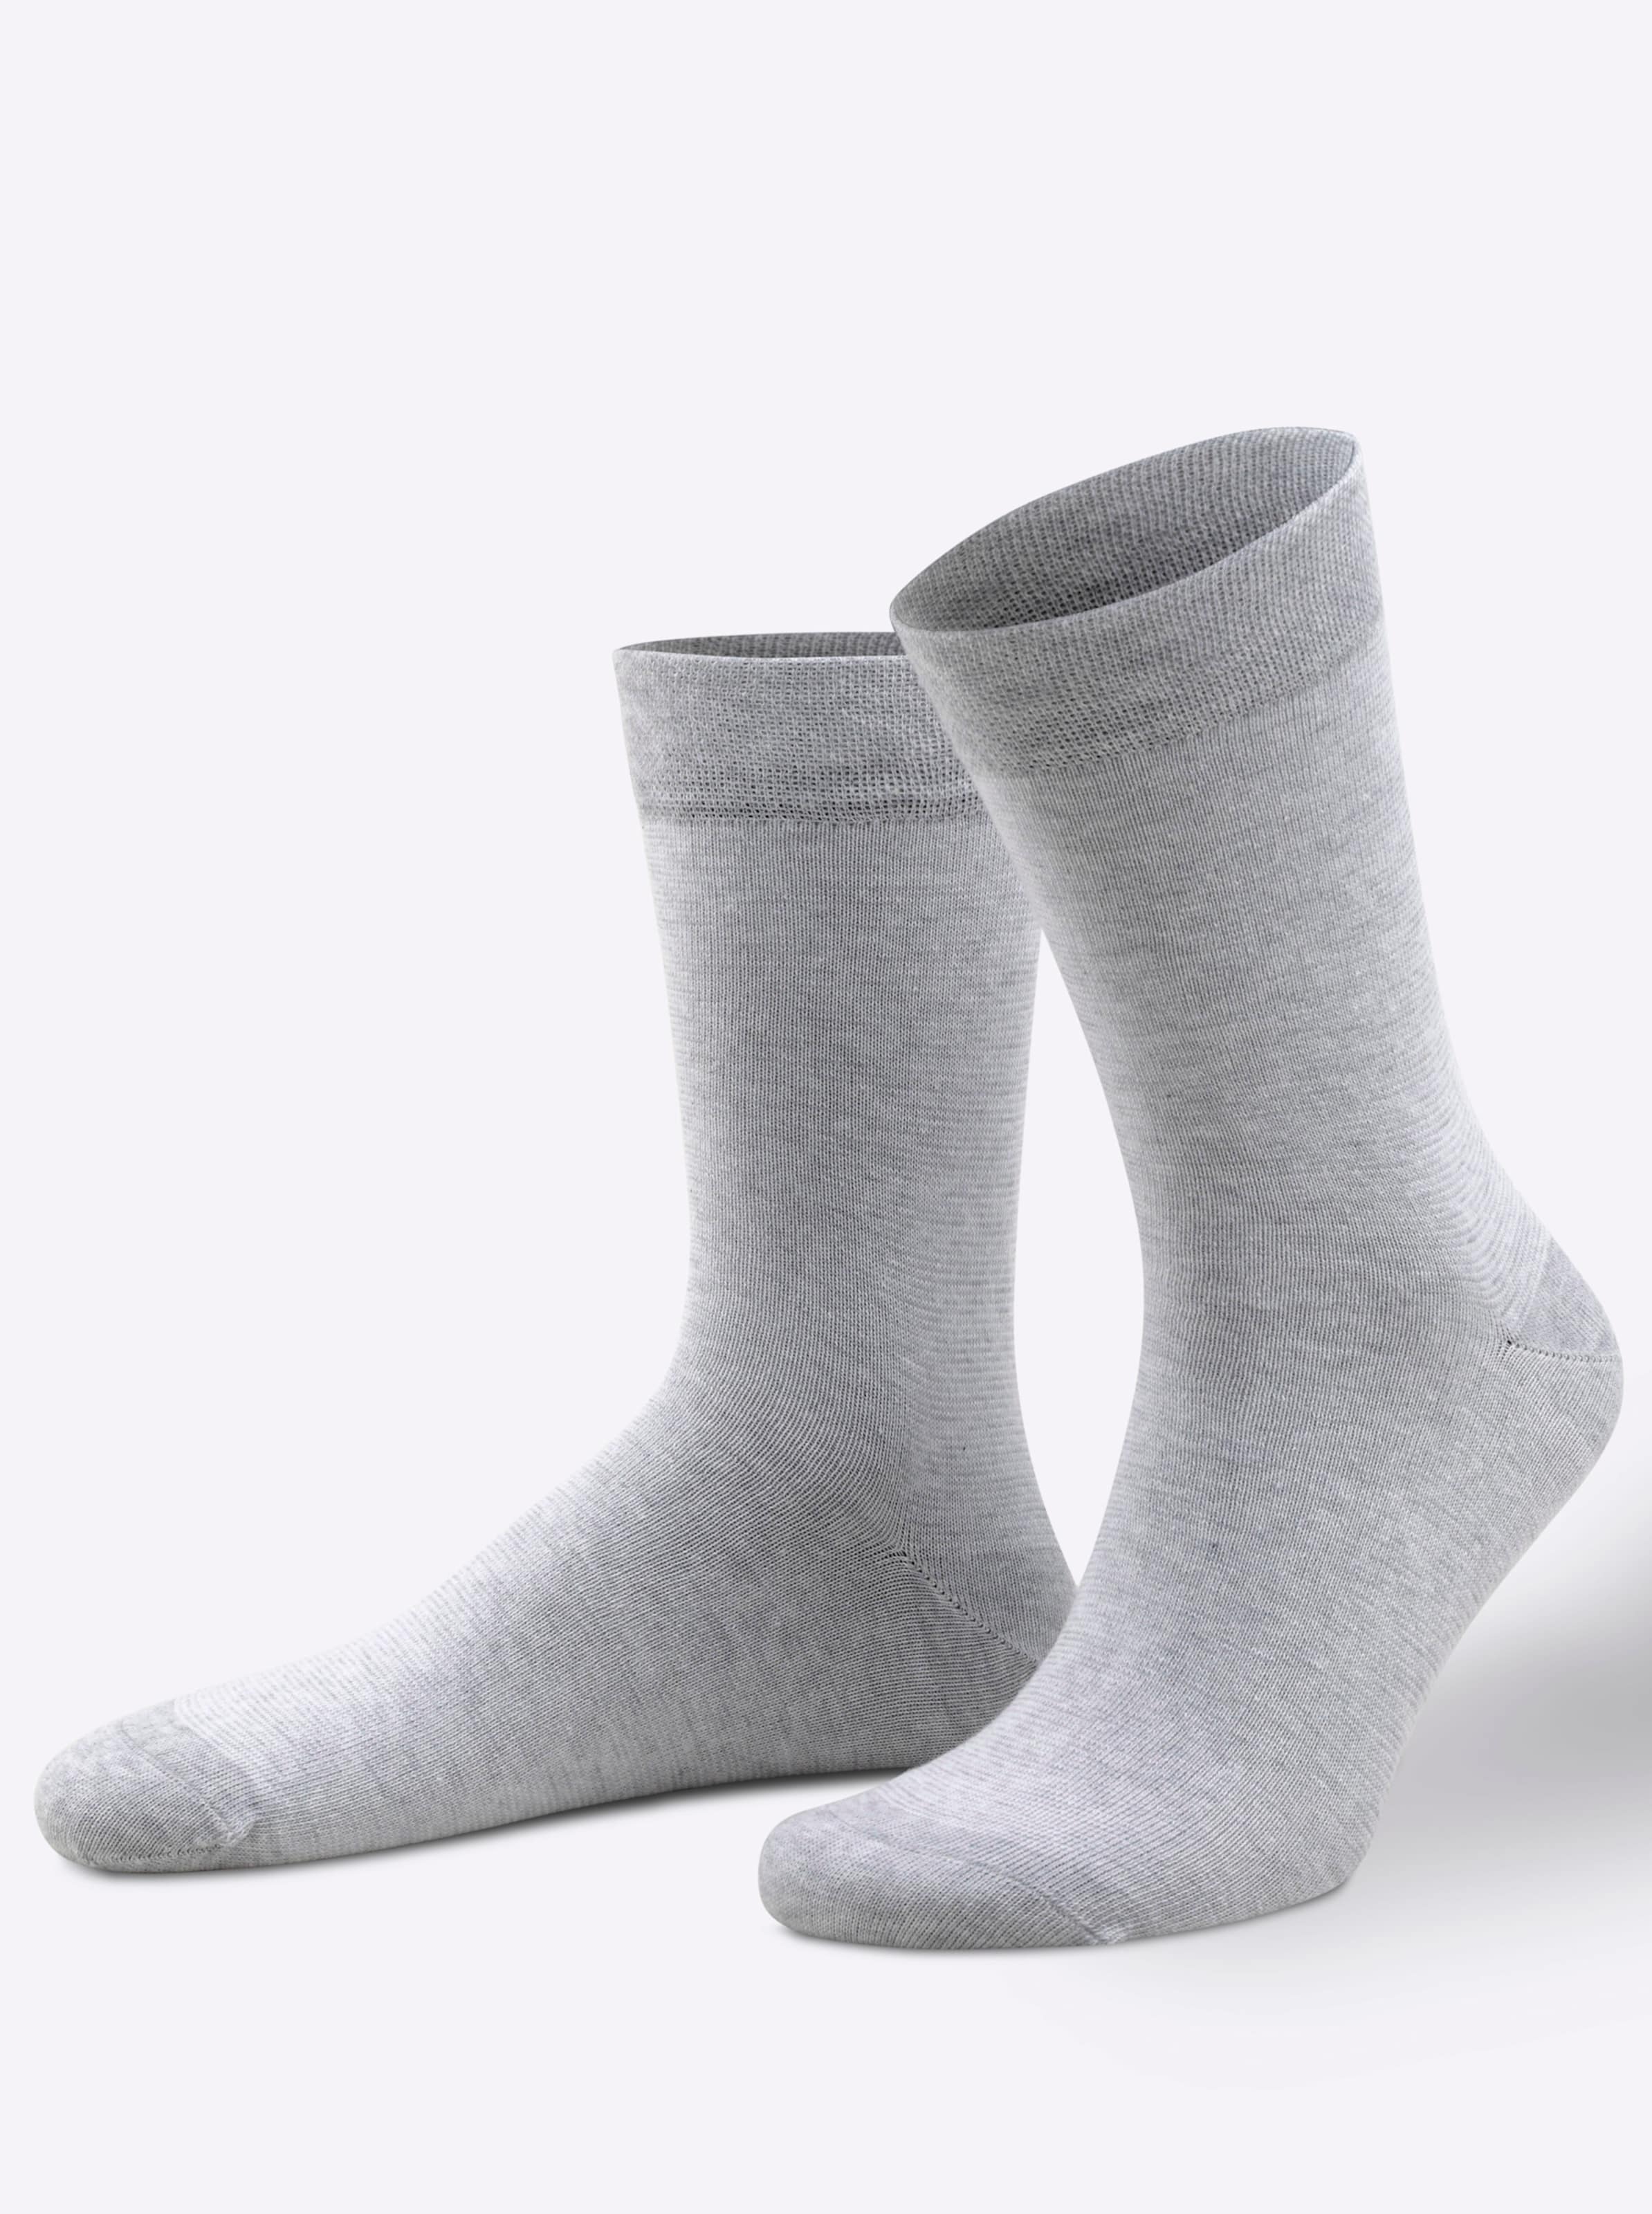 Witt Damen Socken, grau-meliert